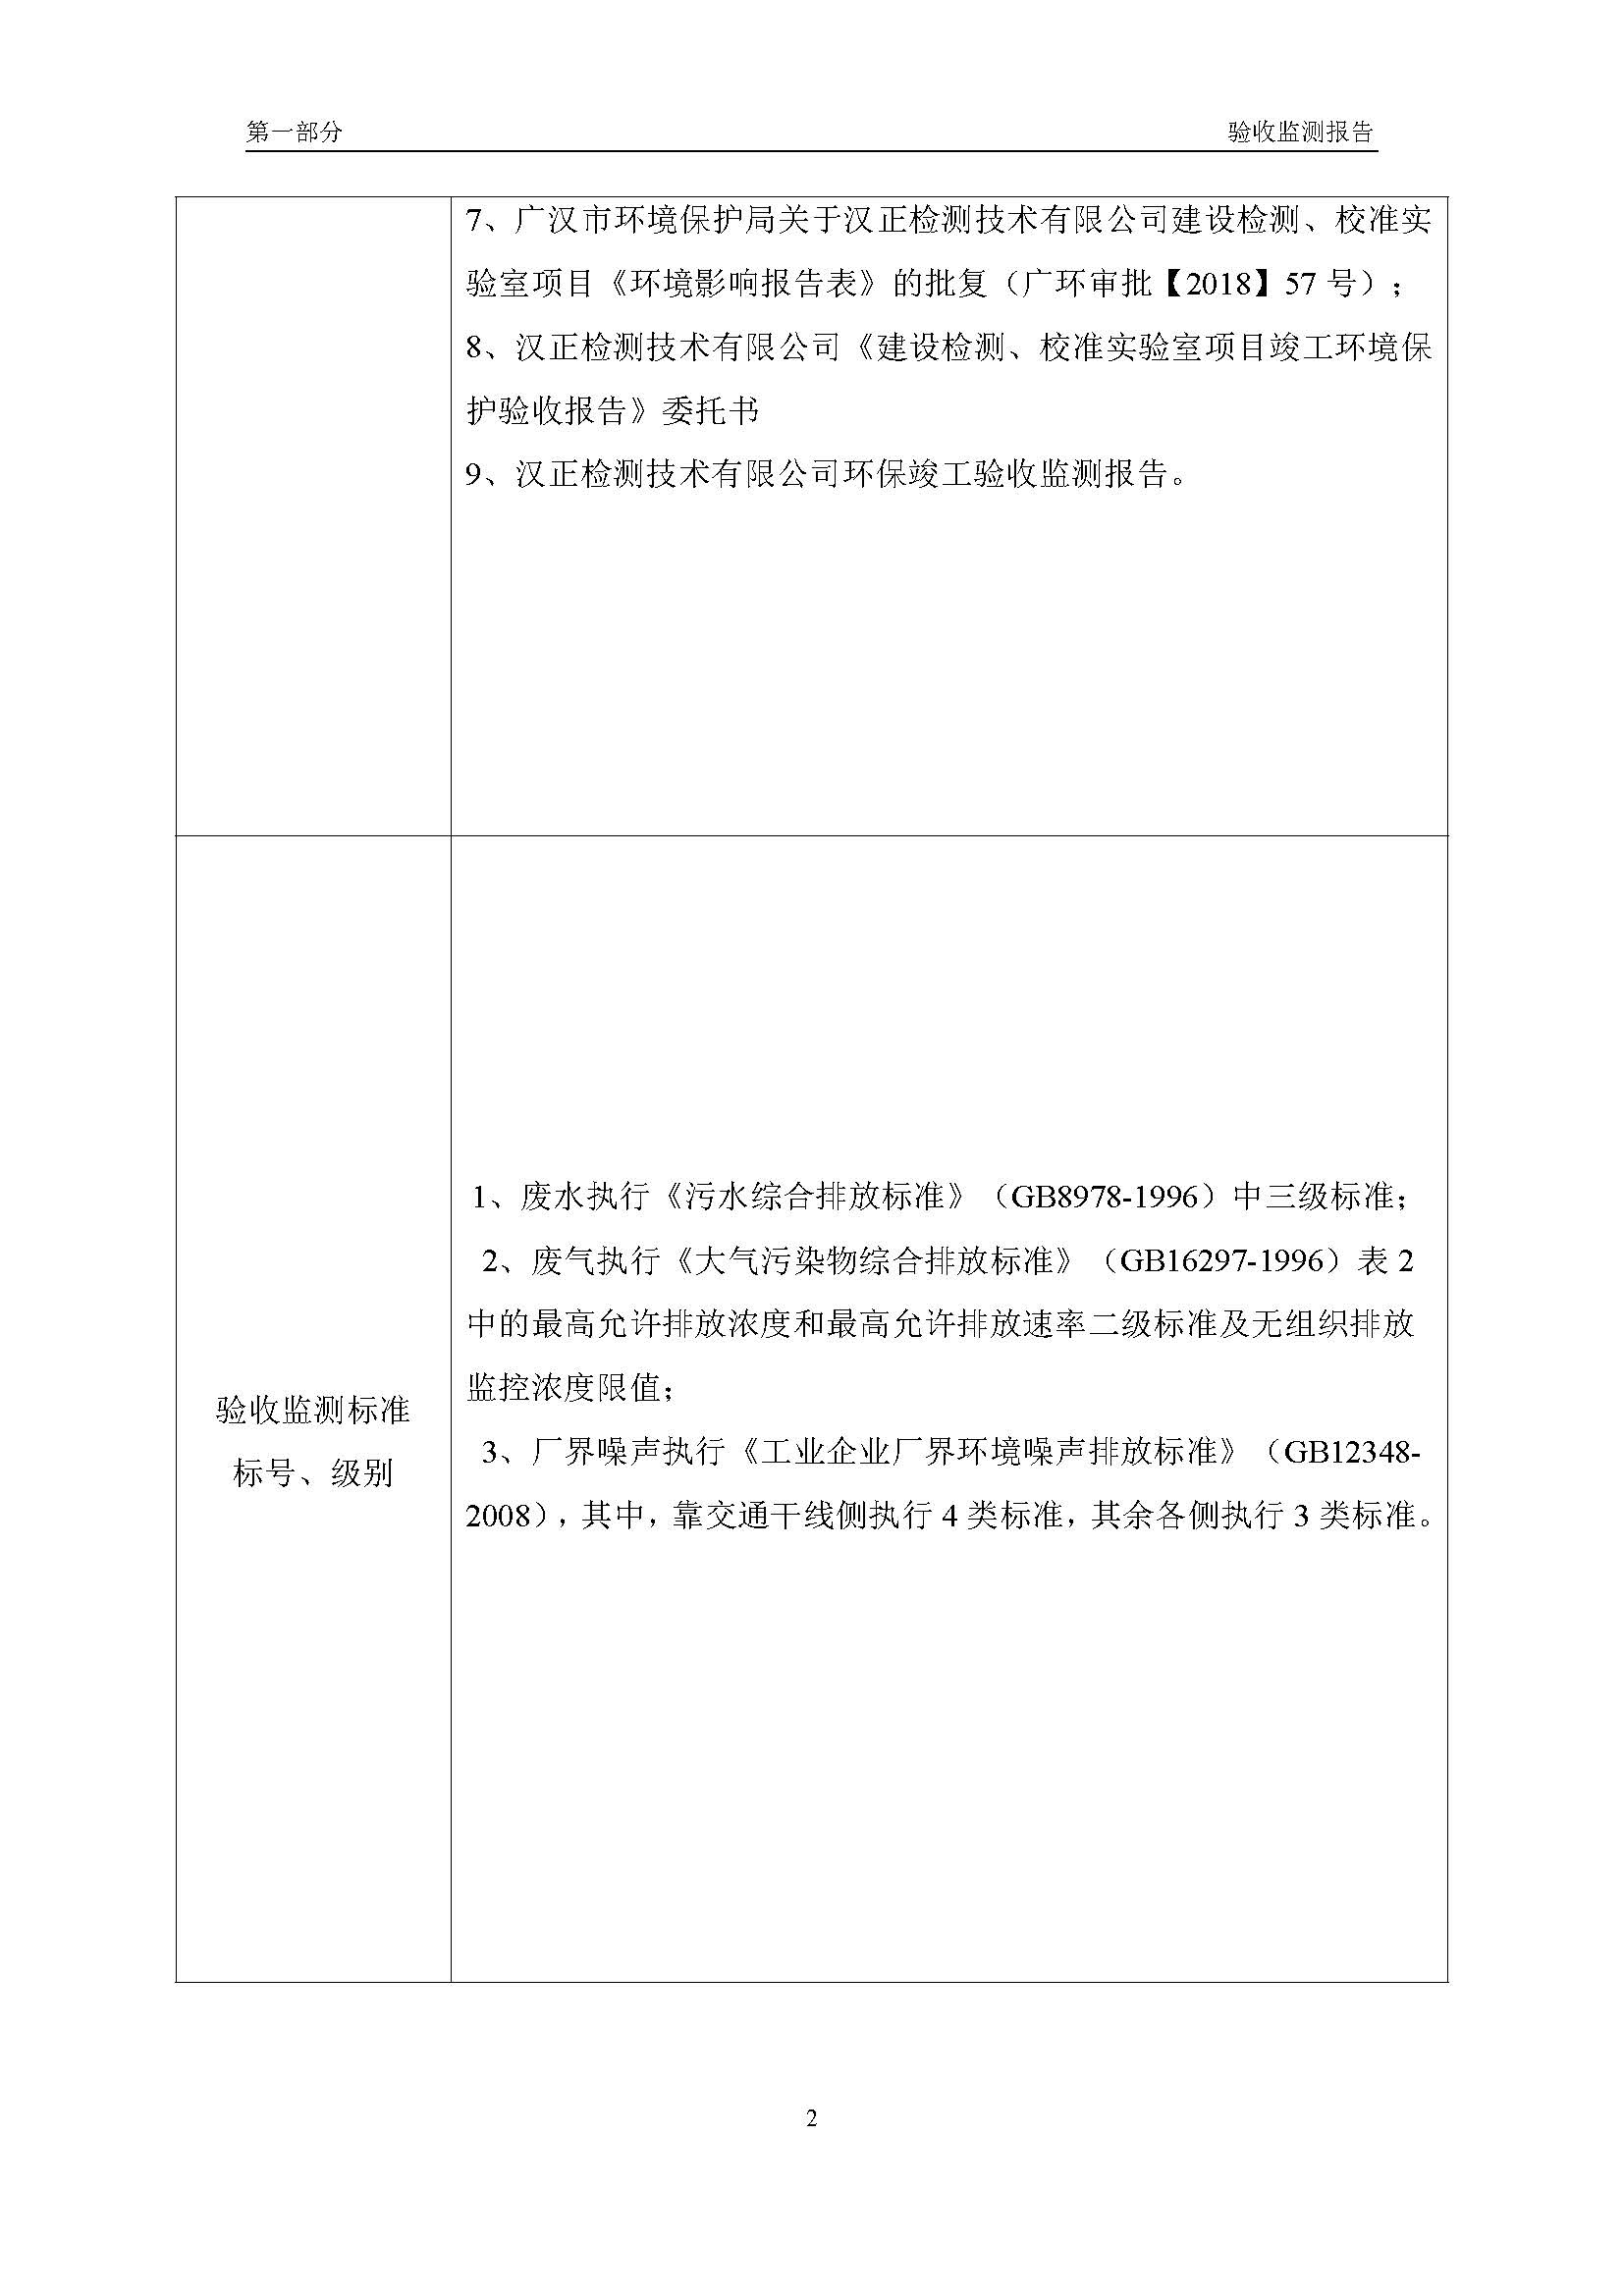 汉正检测环评验收报告 2018.05.31_页面_04.jpg